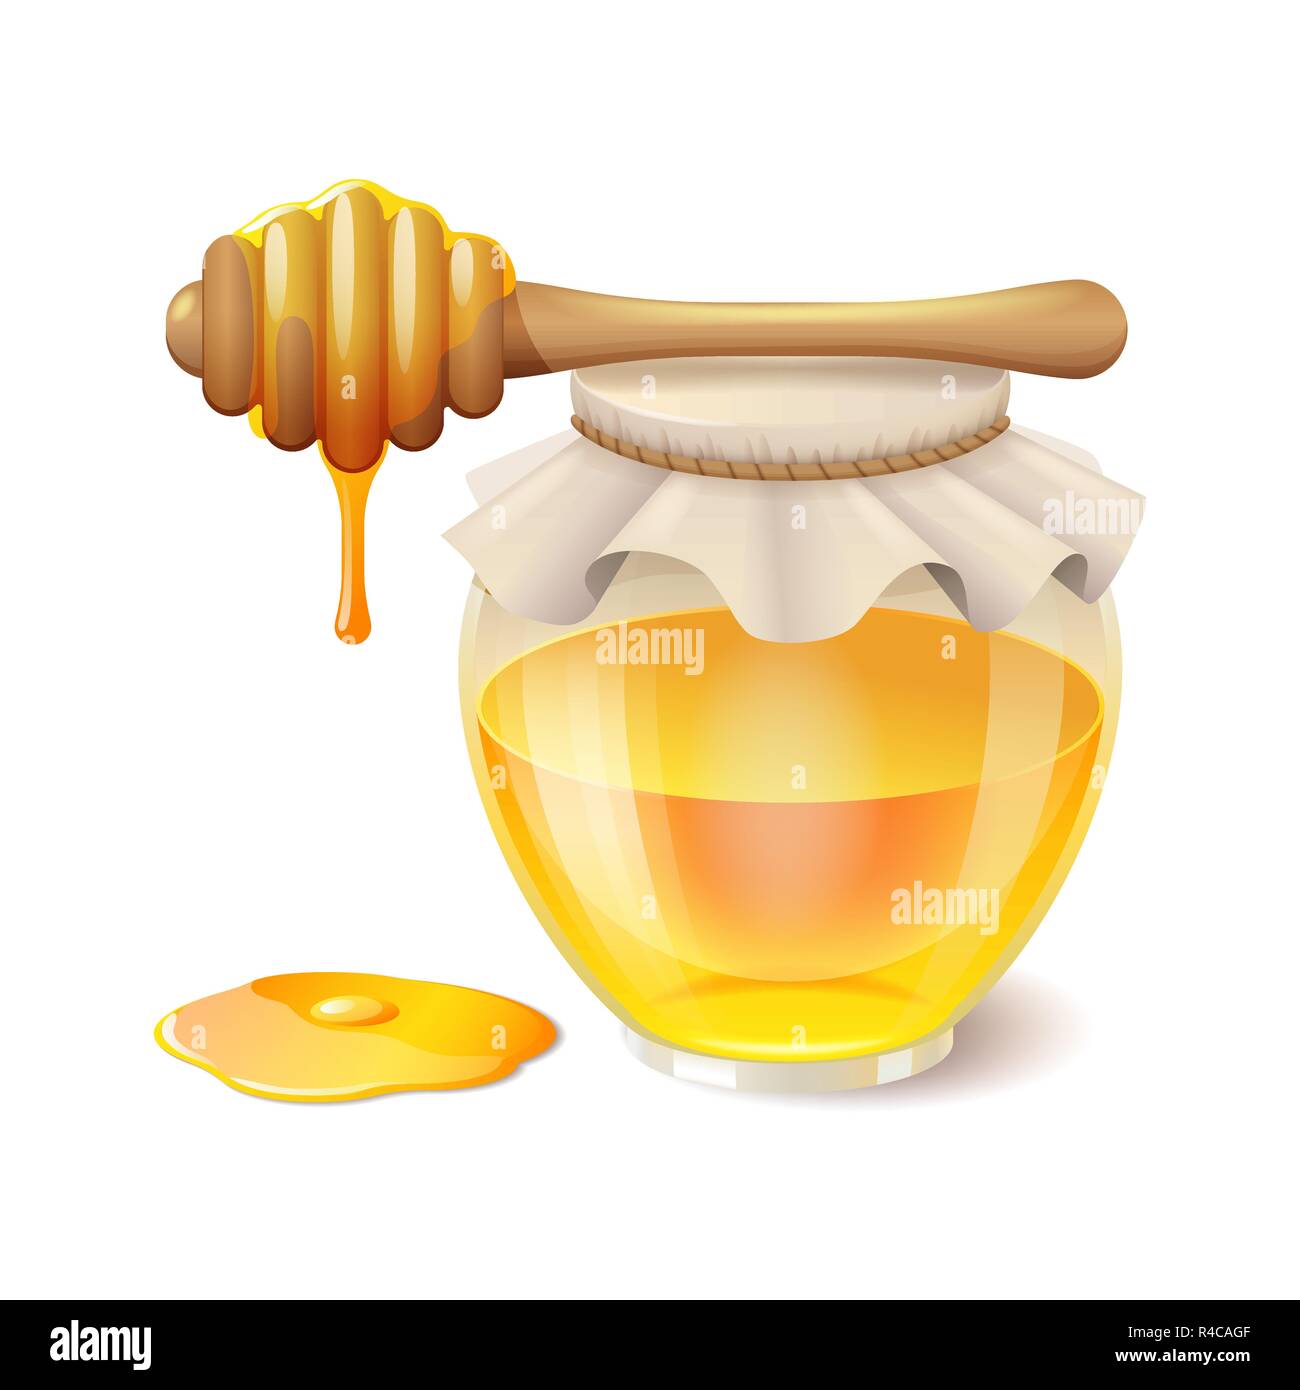 Горкі ліпавы мед чытаць. Мед соты вектор. Стикеры вкусный мёд. Кувшин с медом из фетра. Медовая ЛОВУШКА картинка.